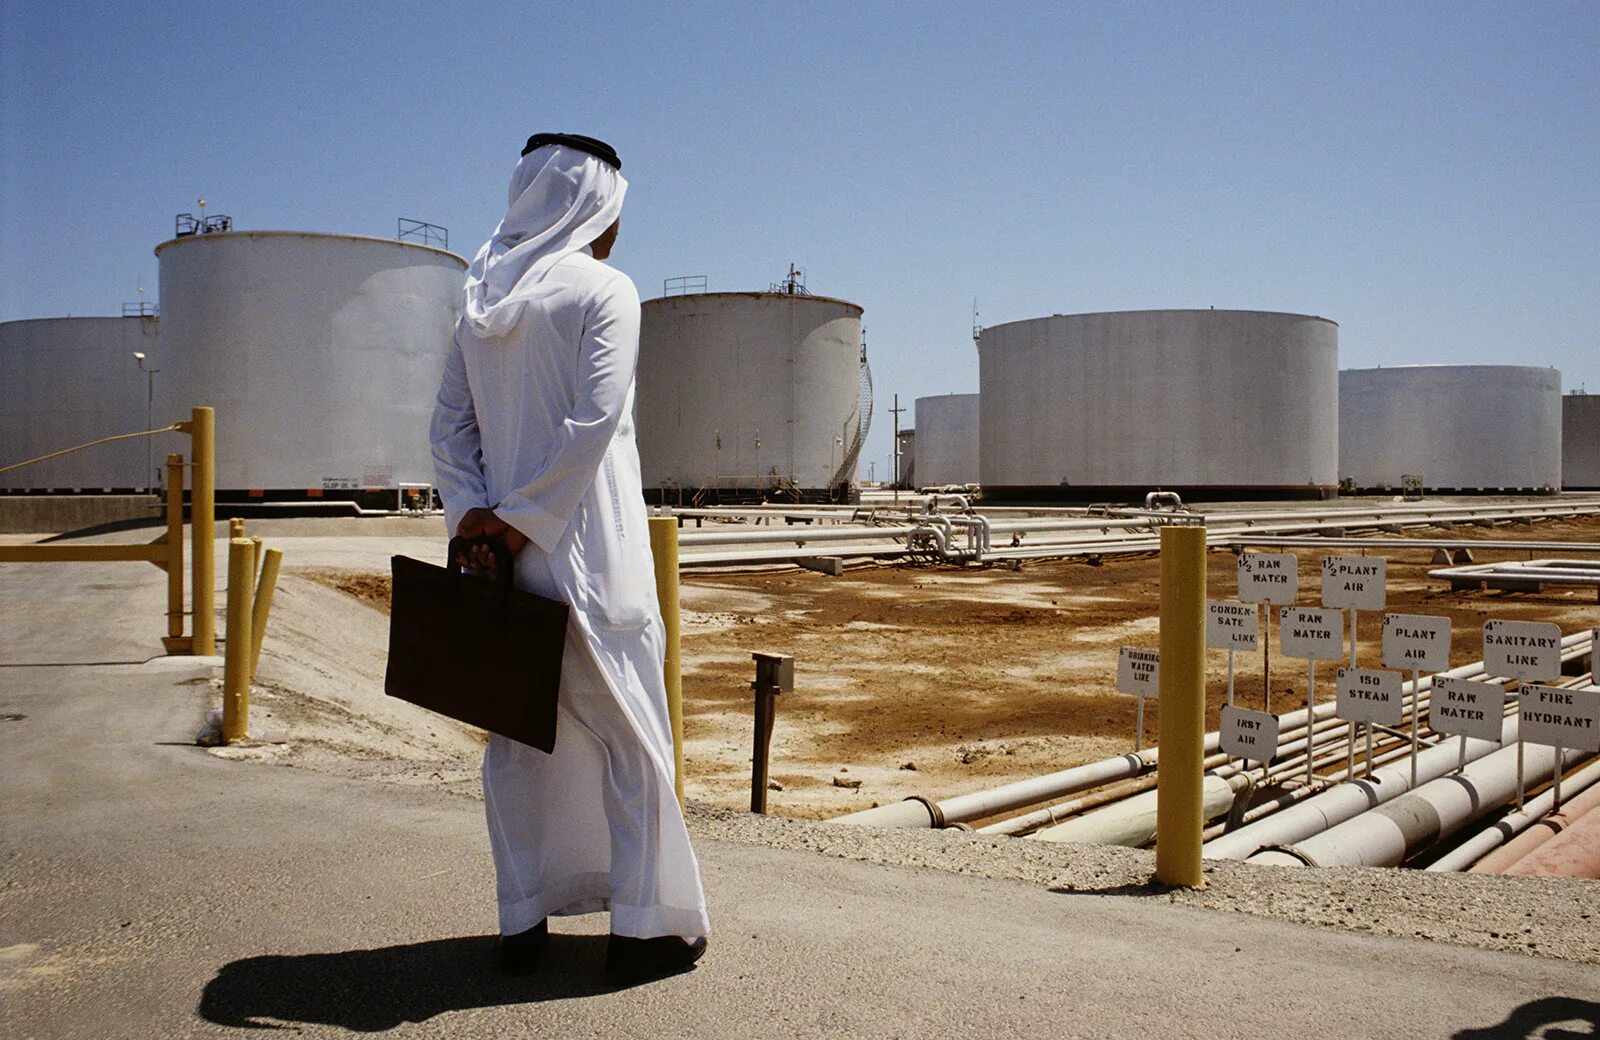 Саудовская Аравия нефть Saudi Aramco. Нефтяная компания в Саудовской Аравии Aramco. Добыча нефти Сауди Арамко. Завод в Саудовской Аравии Арамко. Саудовская аравия нефть газ